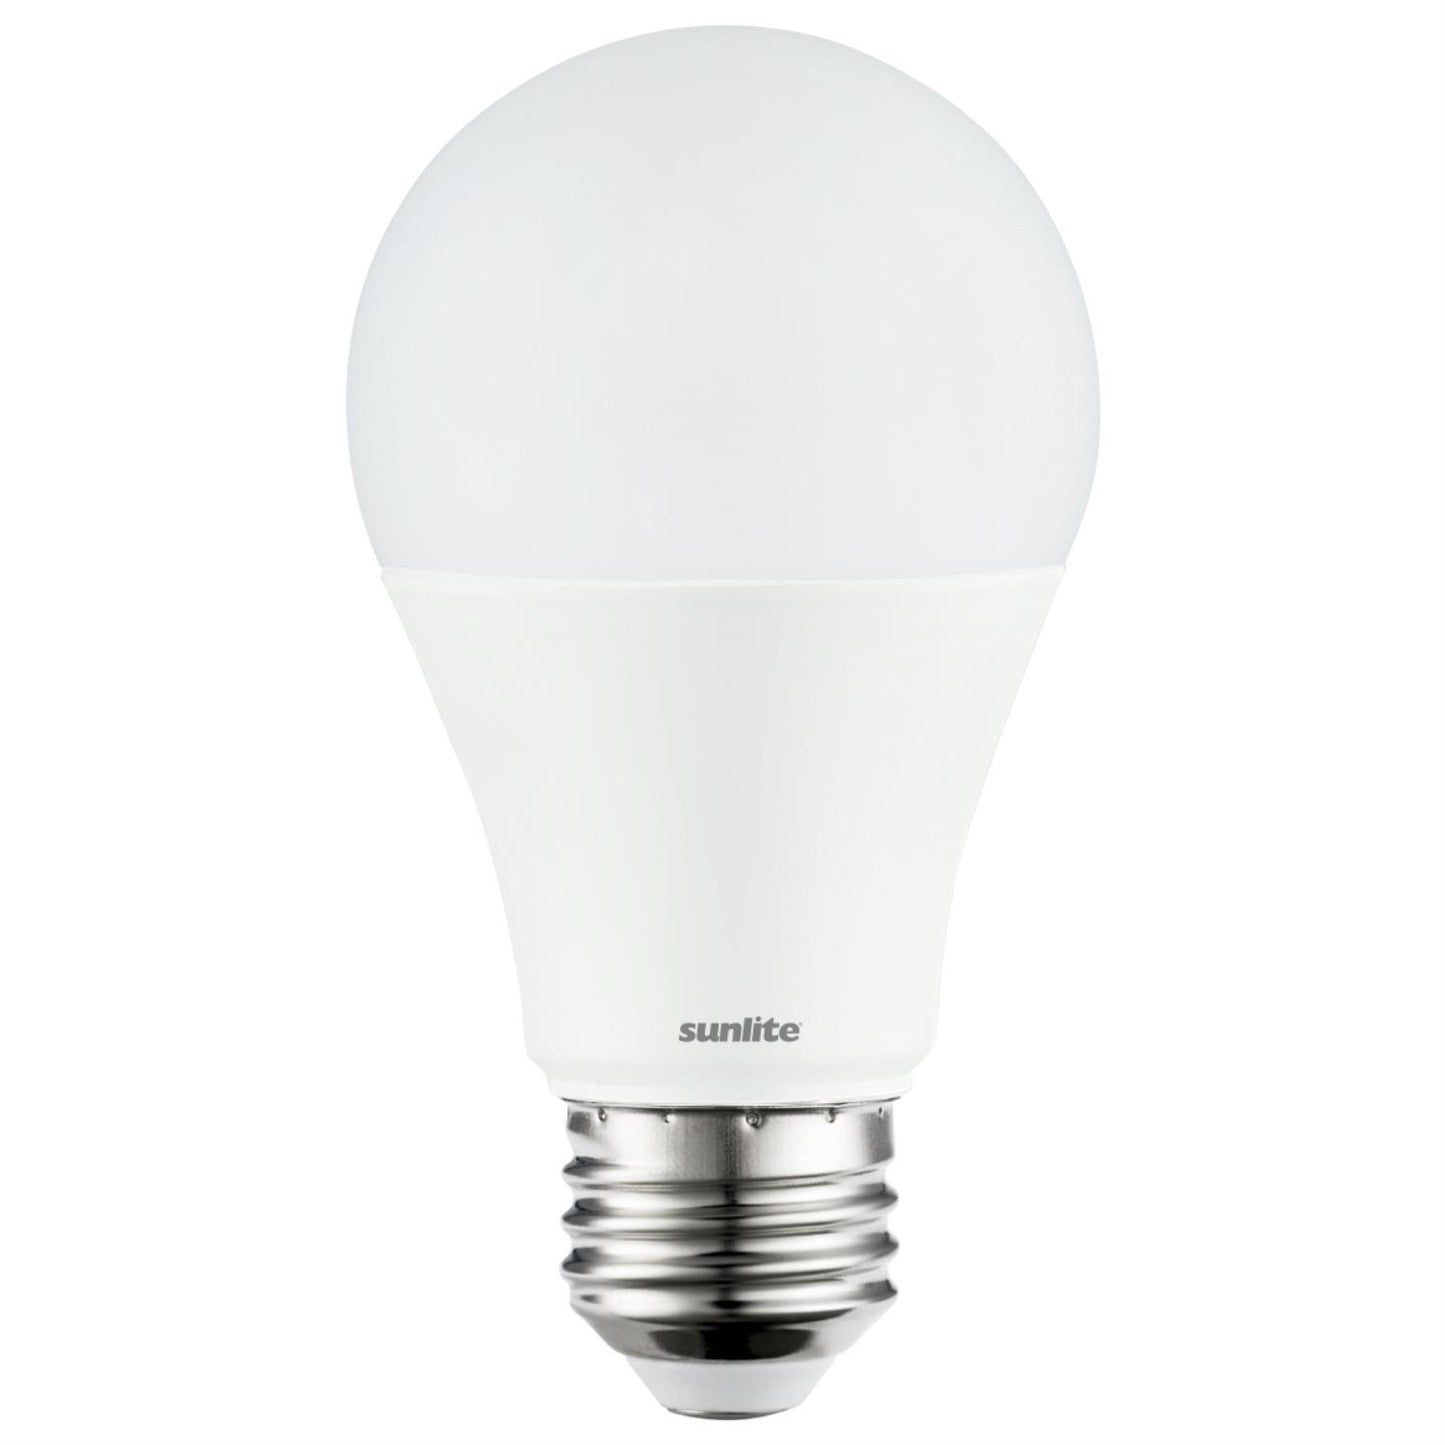 Sunlite LED A19 Standard Light Bulb, 6 Watts (40 Watt Equivalent), 450 Lumens, Medium Base (E26), Dimmable, UL Listed, Energy Star, 5000K Super White, 12 Pack